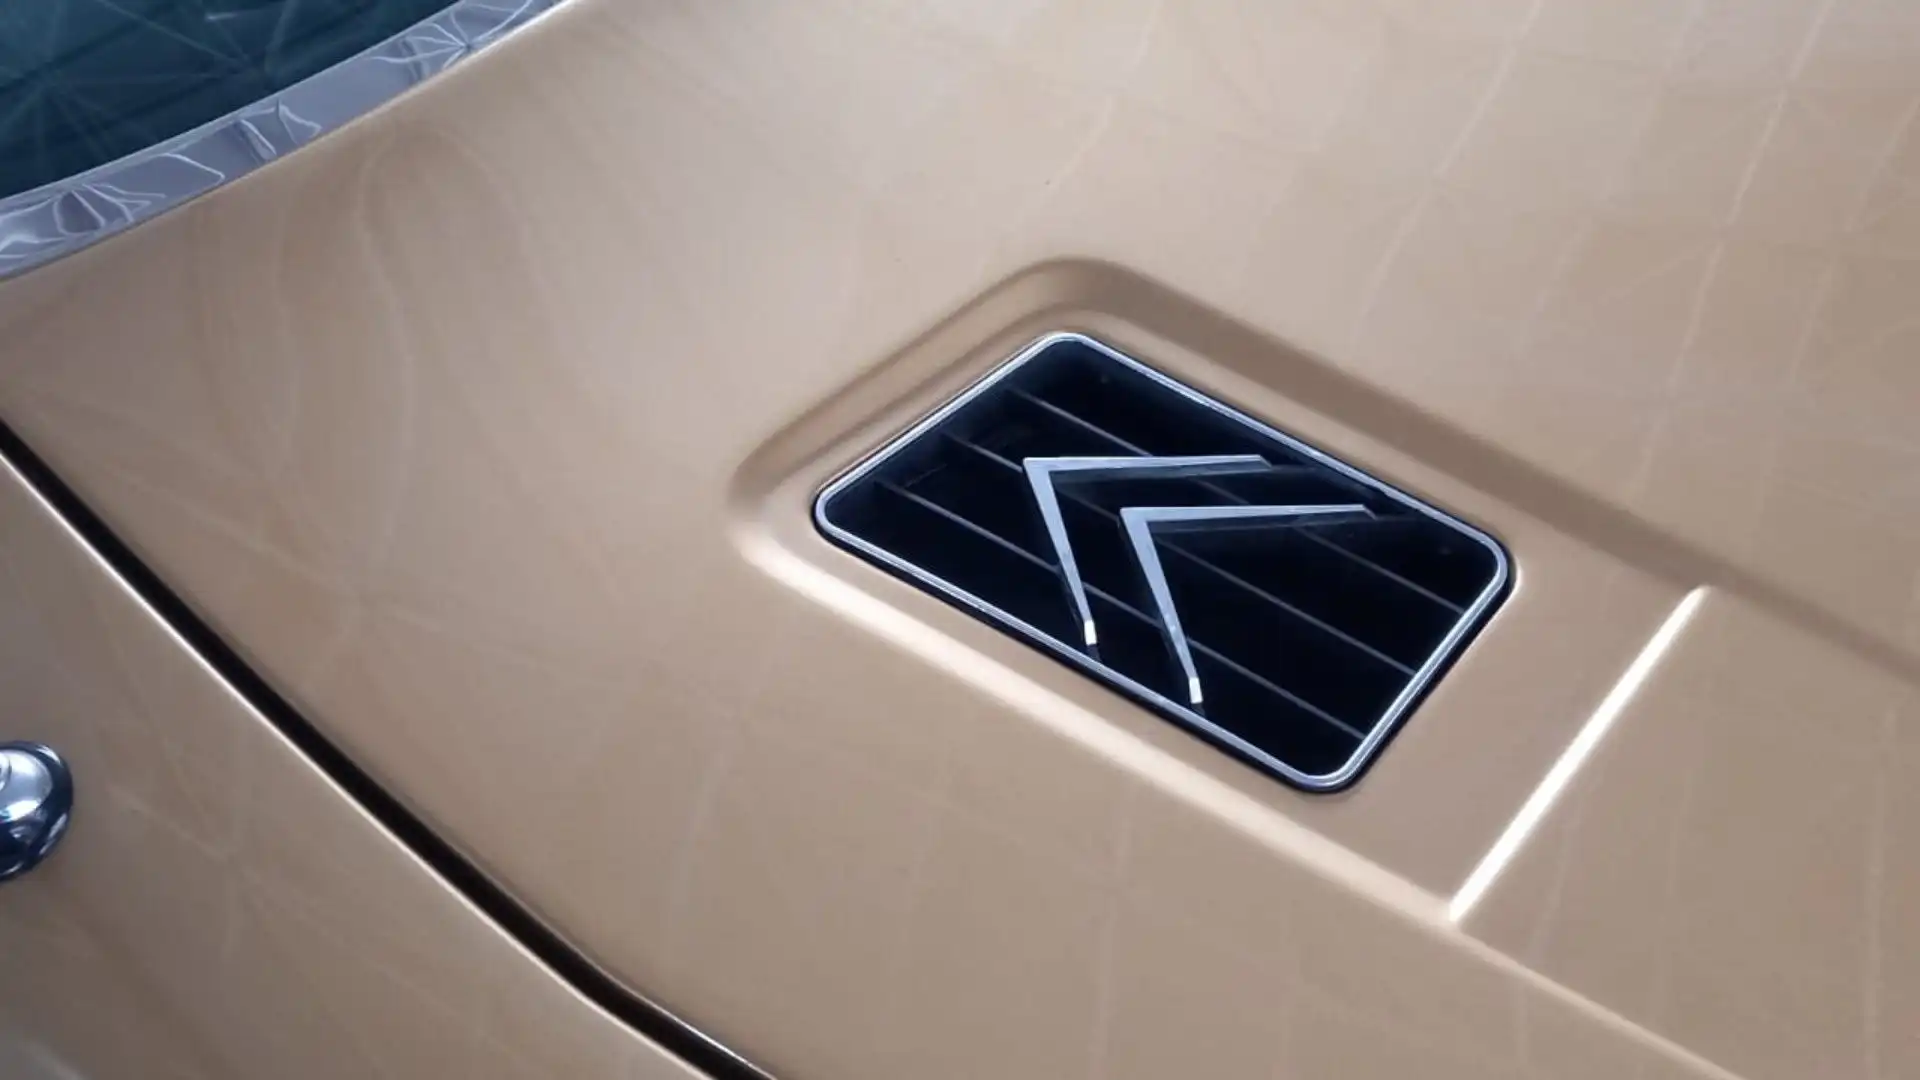 Nella sigla SM la S indica il codice del progetto e la M sta per Maserati